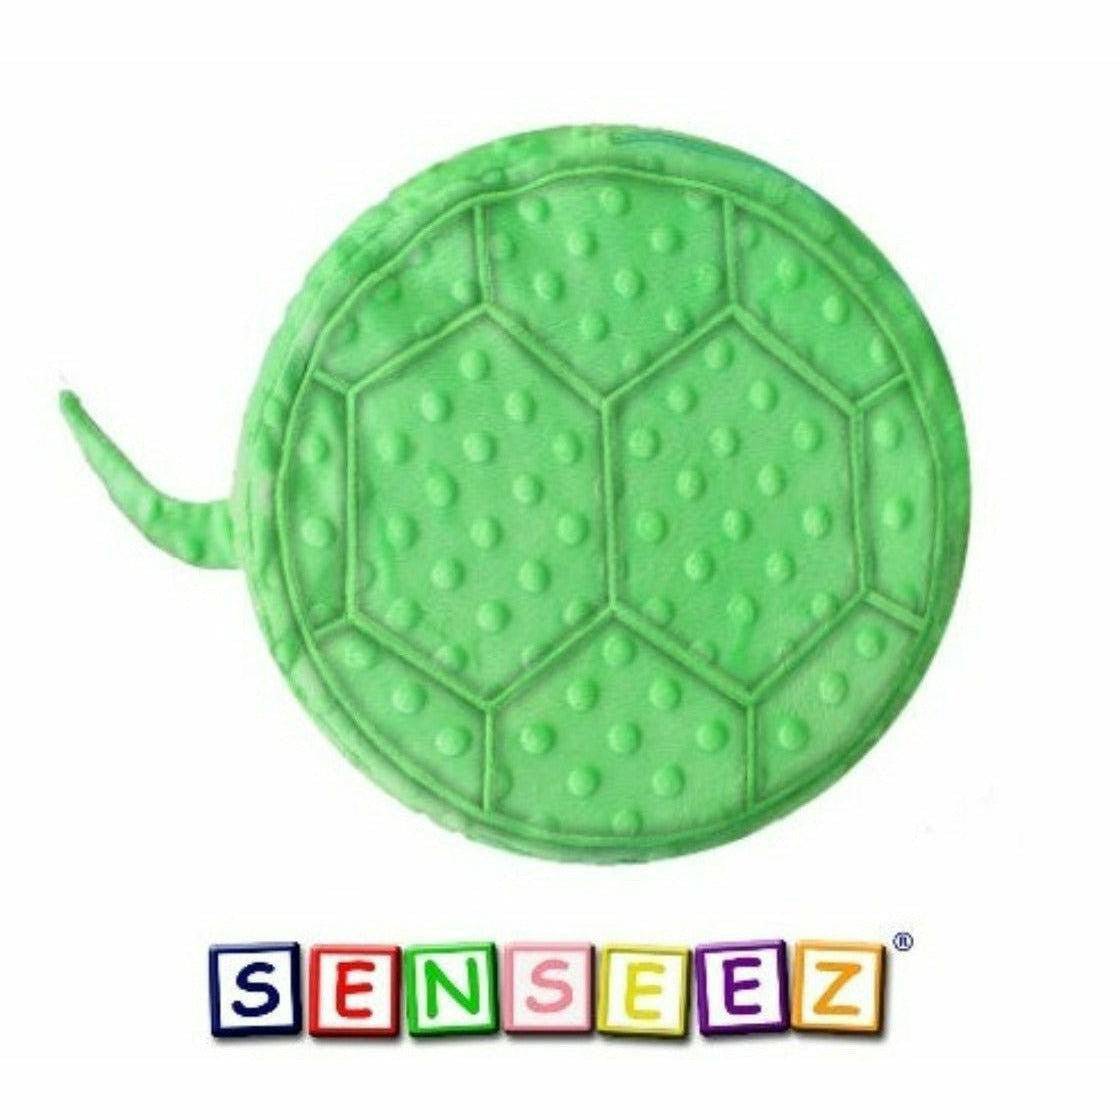 Senseez vibrating cushion - Bumpy Turtle (plush) - Sensory Circle